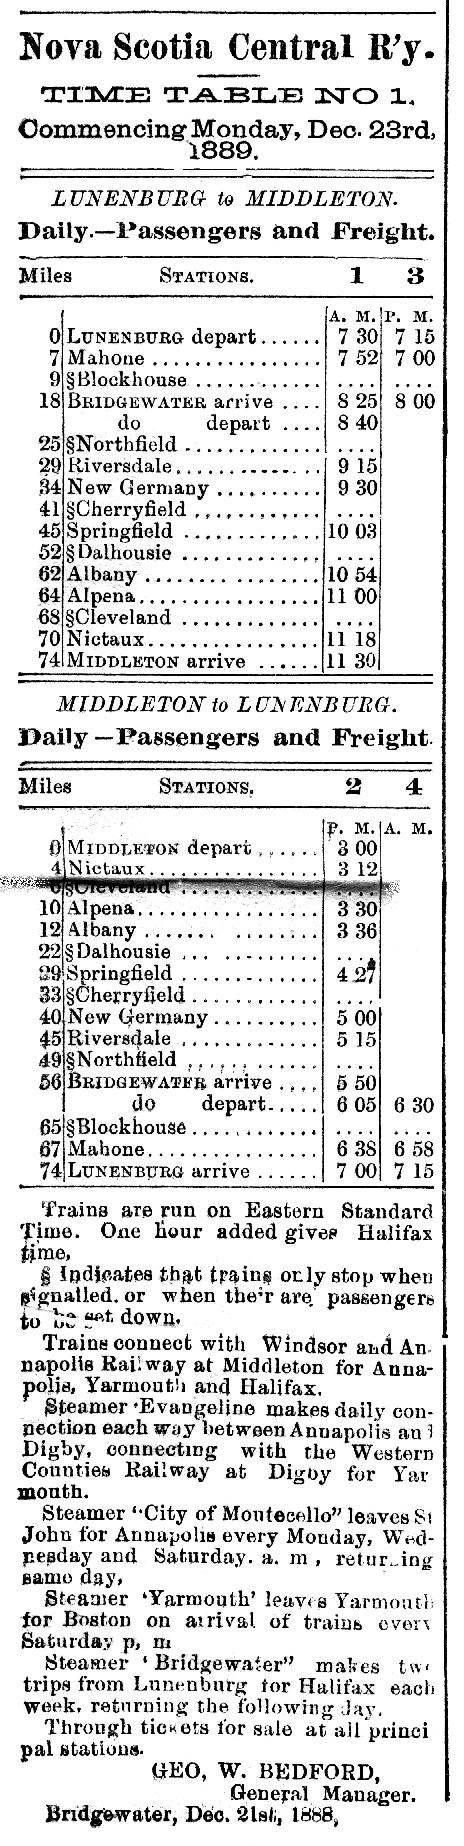 Train Schedule 1880